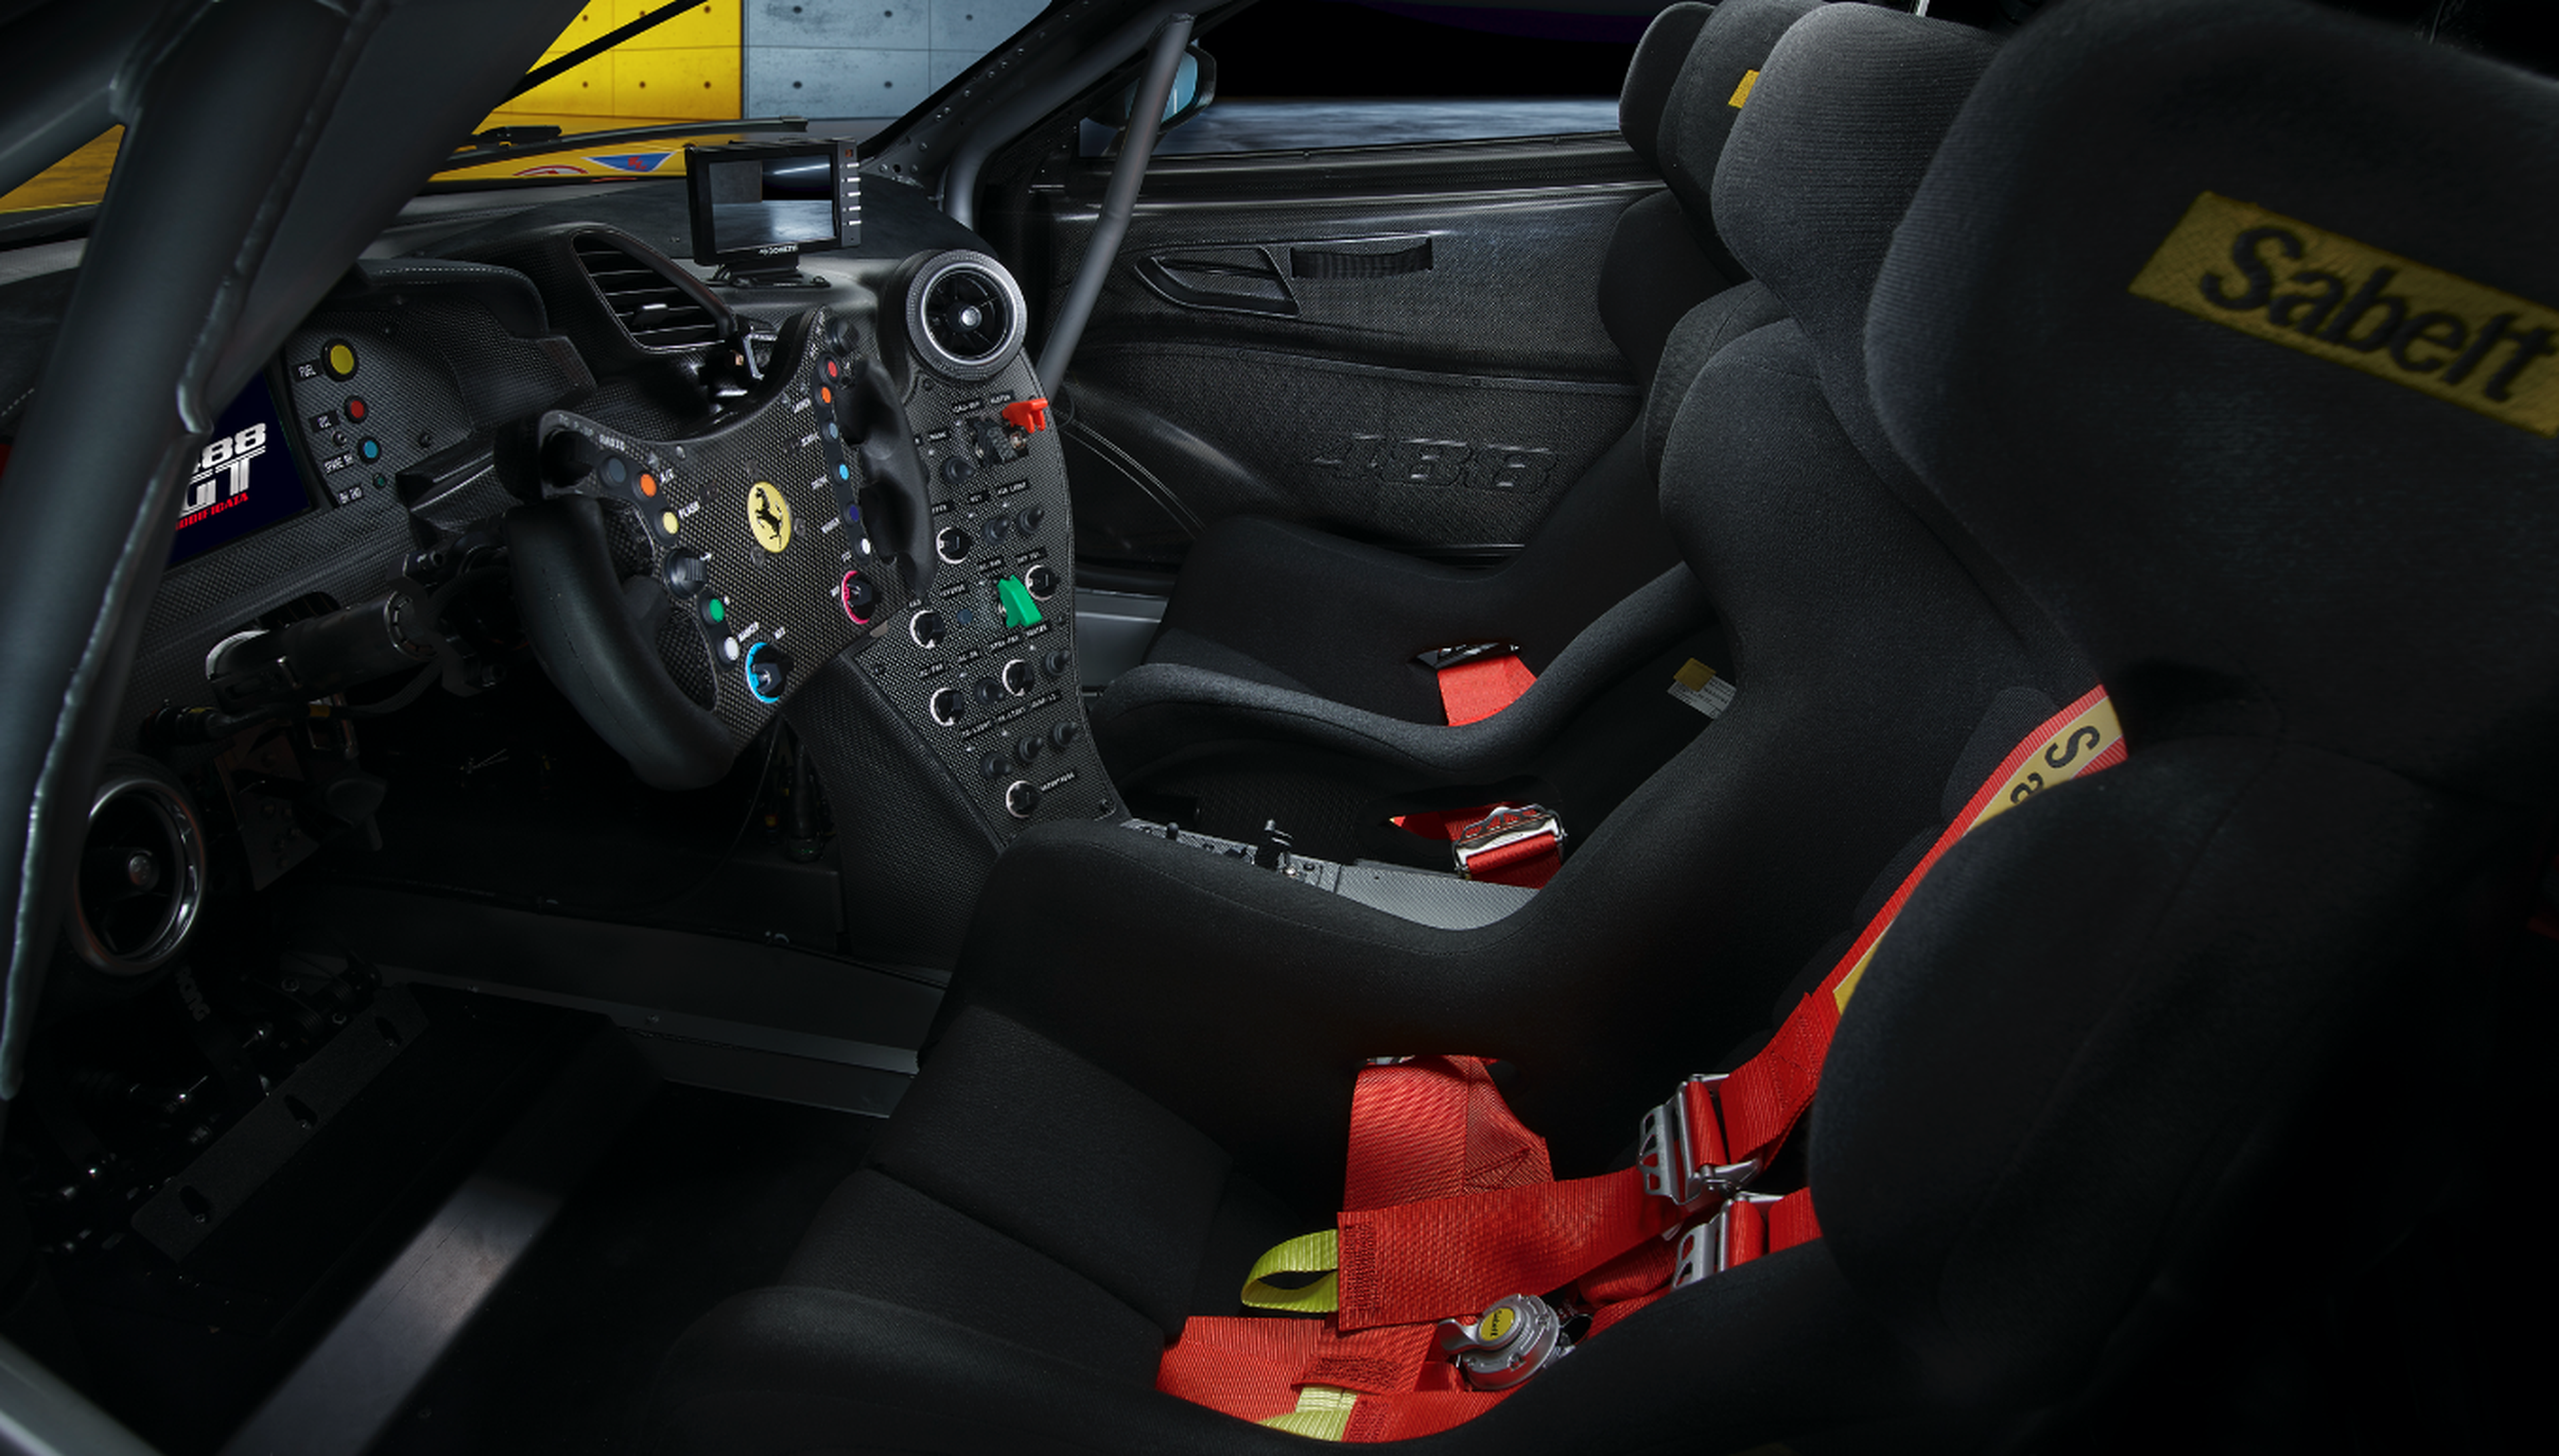 Ferrari 488 GT Modificata